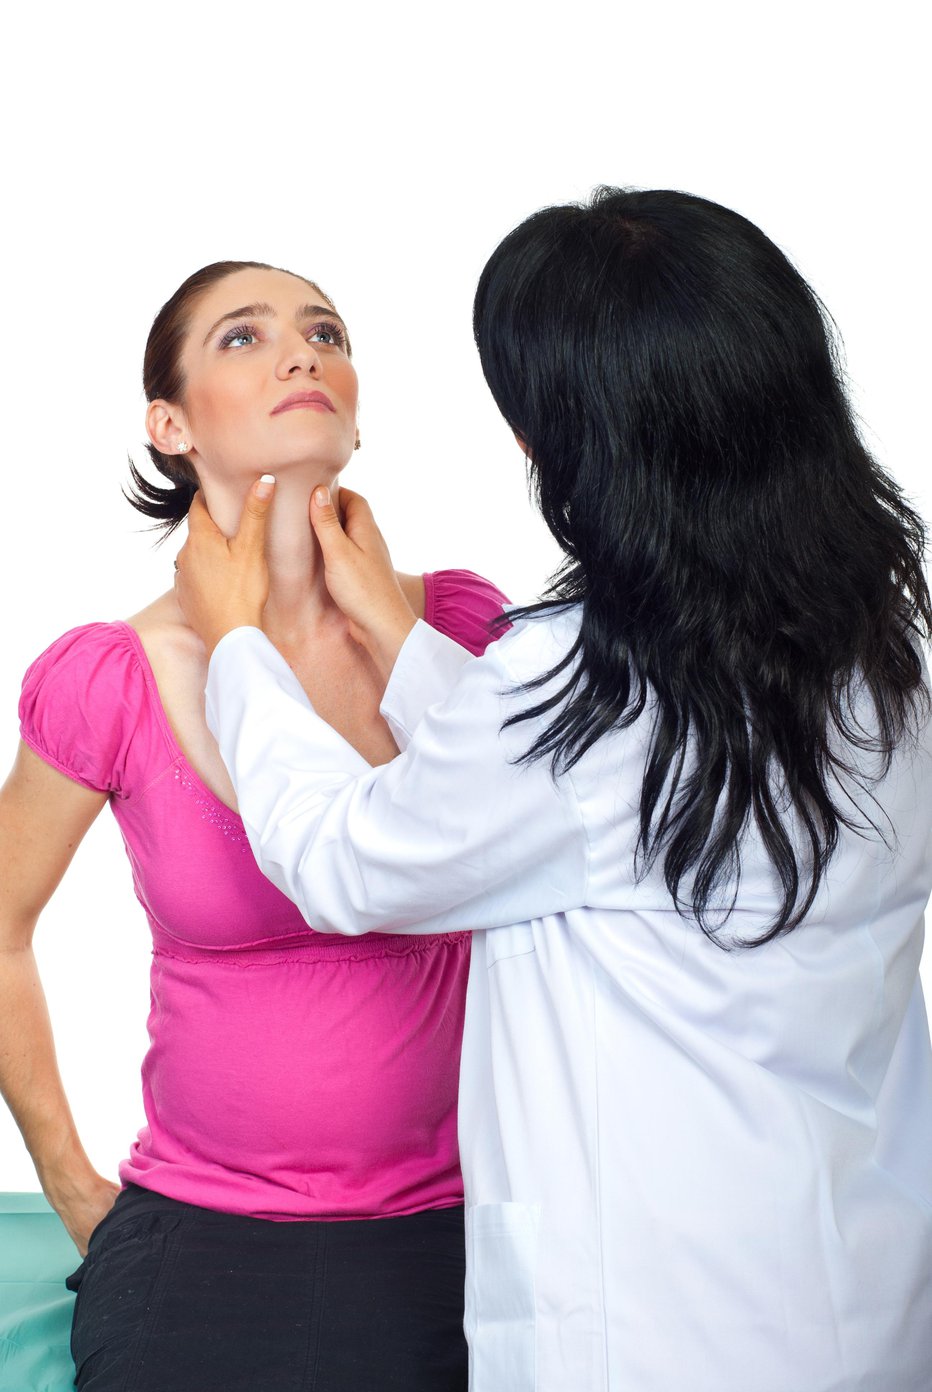 Fotografija: Simptom čezmernega delovanje ščitnice se kaže kot golša, zadebelina na spodnji strani vratu. FOTO: Guliver/Getty Images